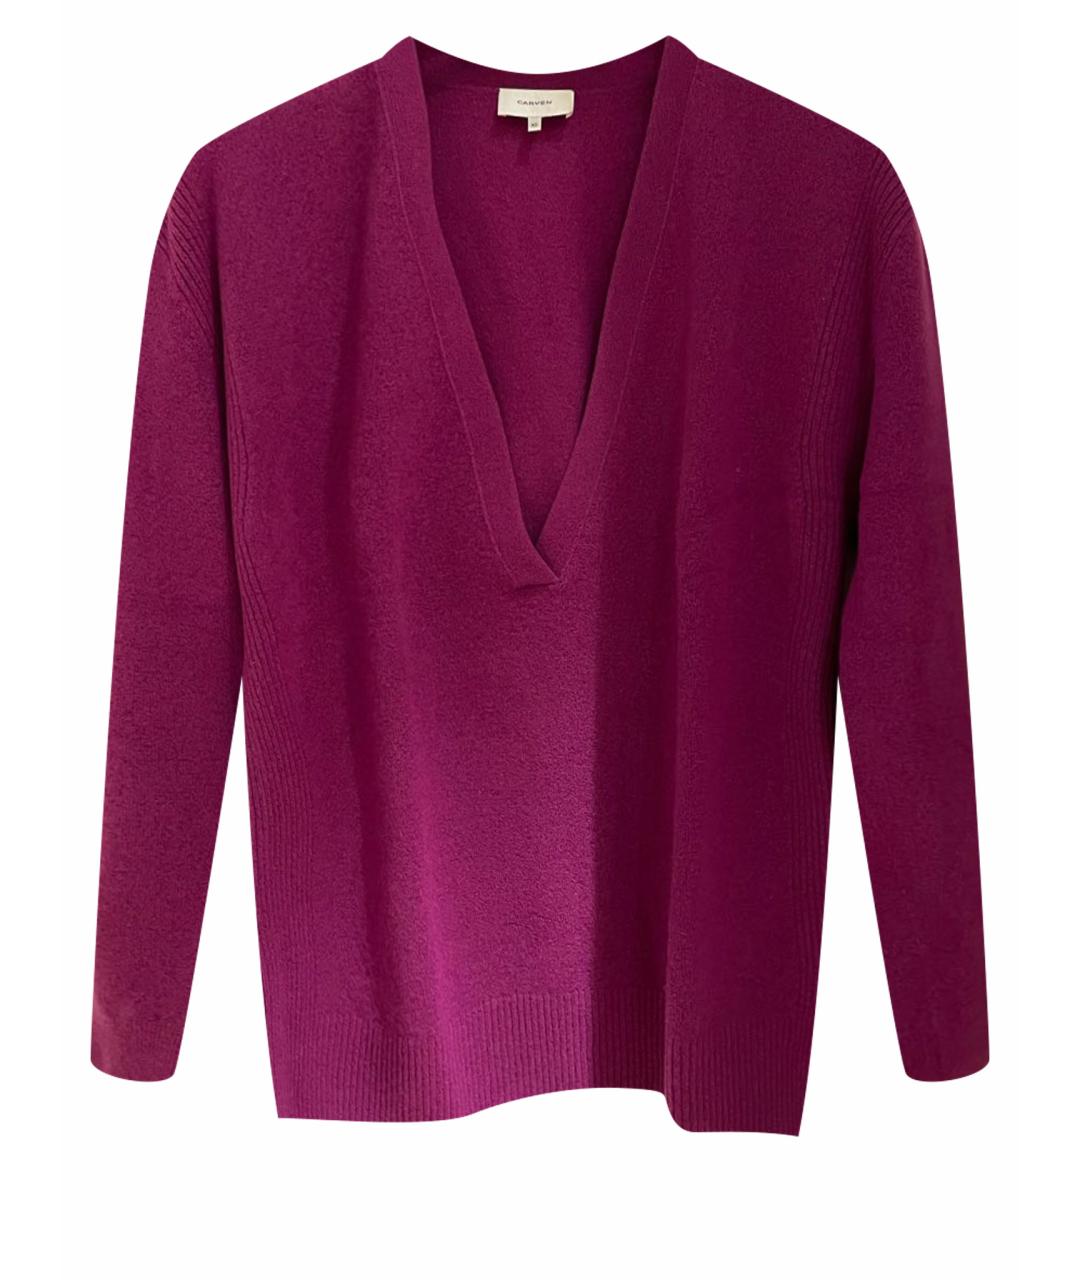 CARVEN Розовый шерстяной джемпер / свитер, фото 1